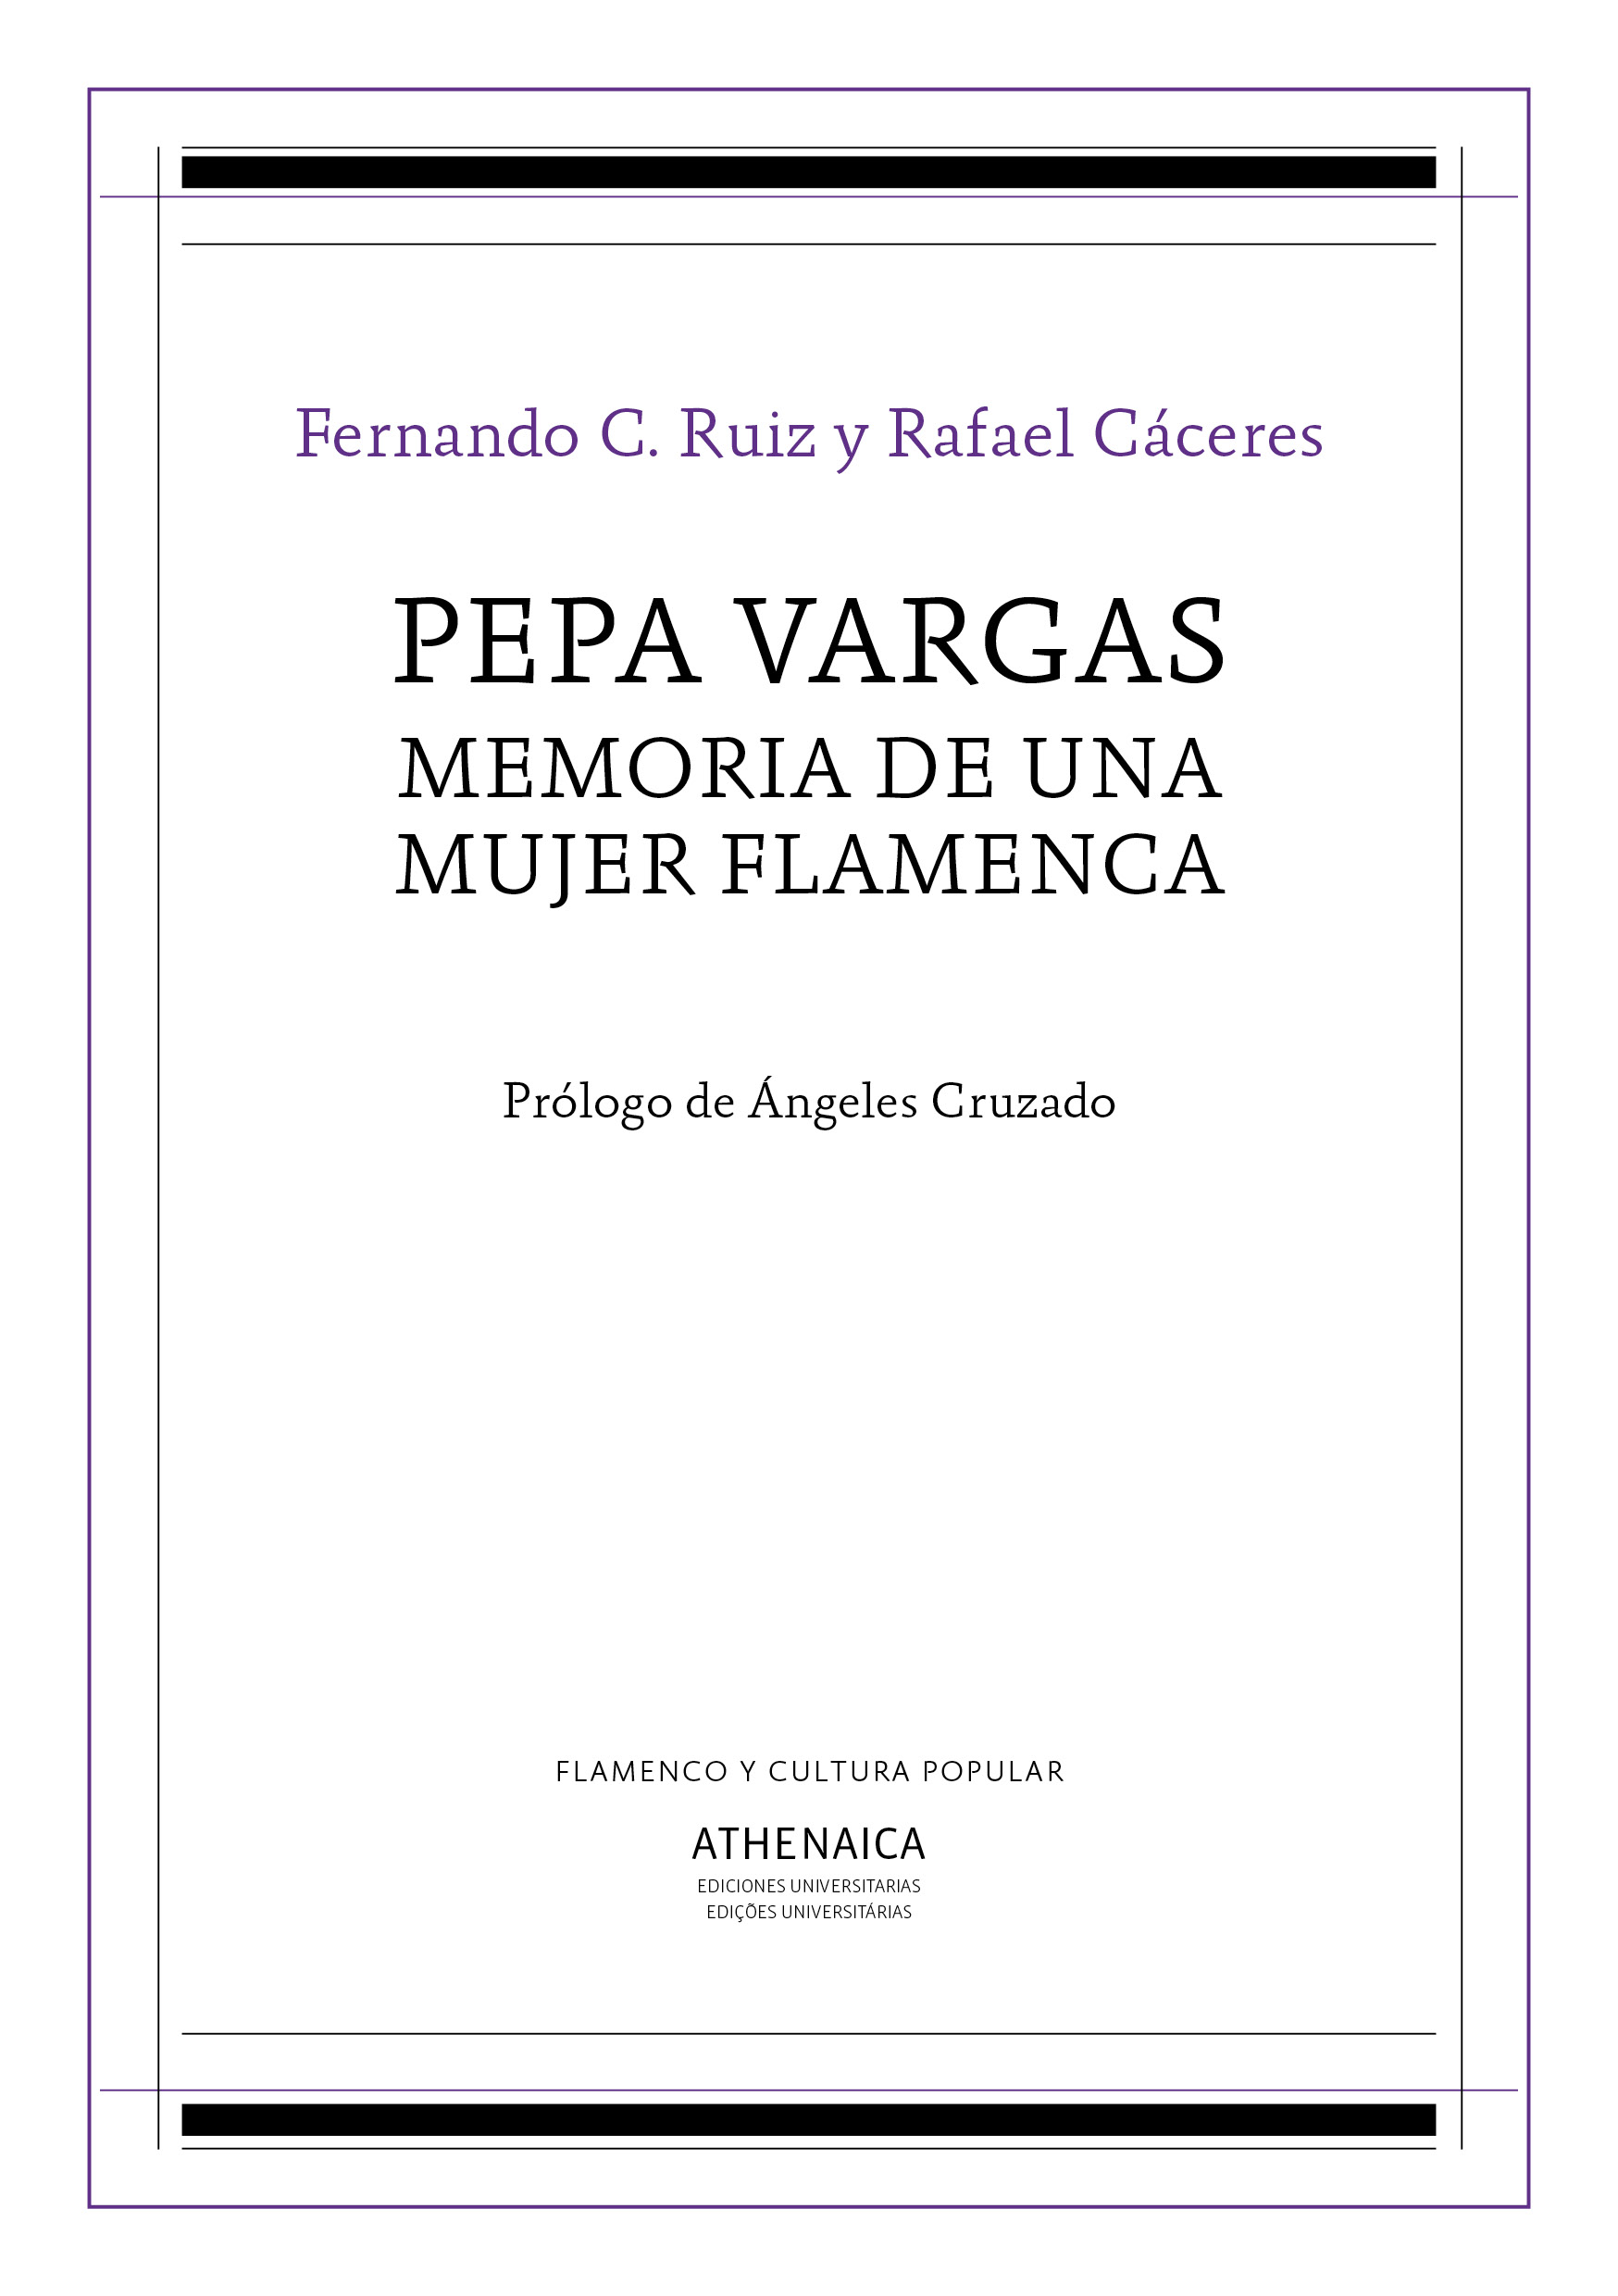 Imagen de portada del libro Pepa Vargas, memoria de una mujer flamenca